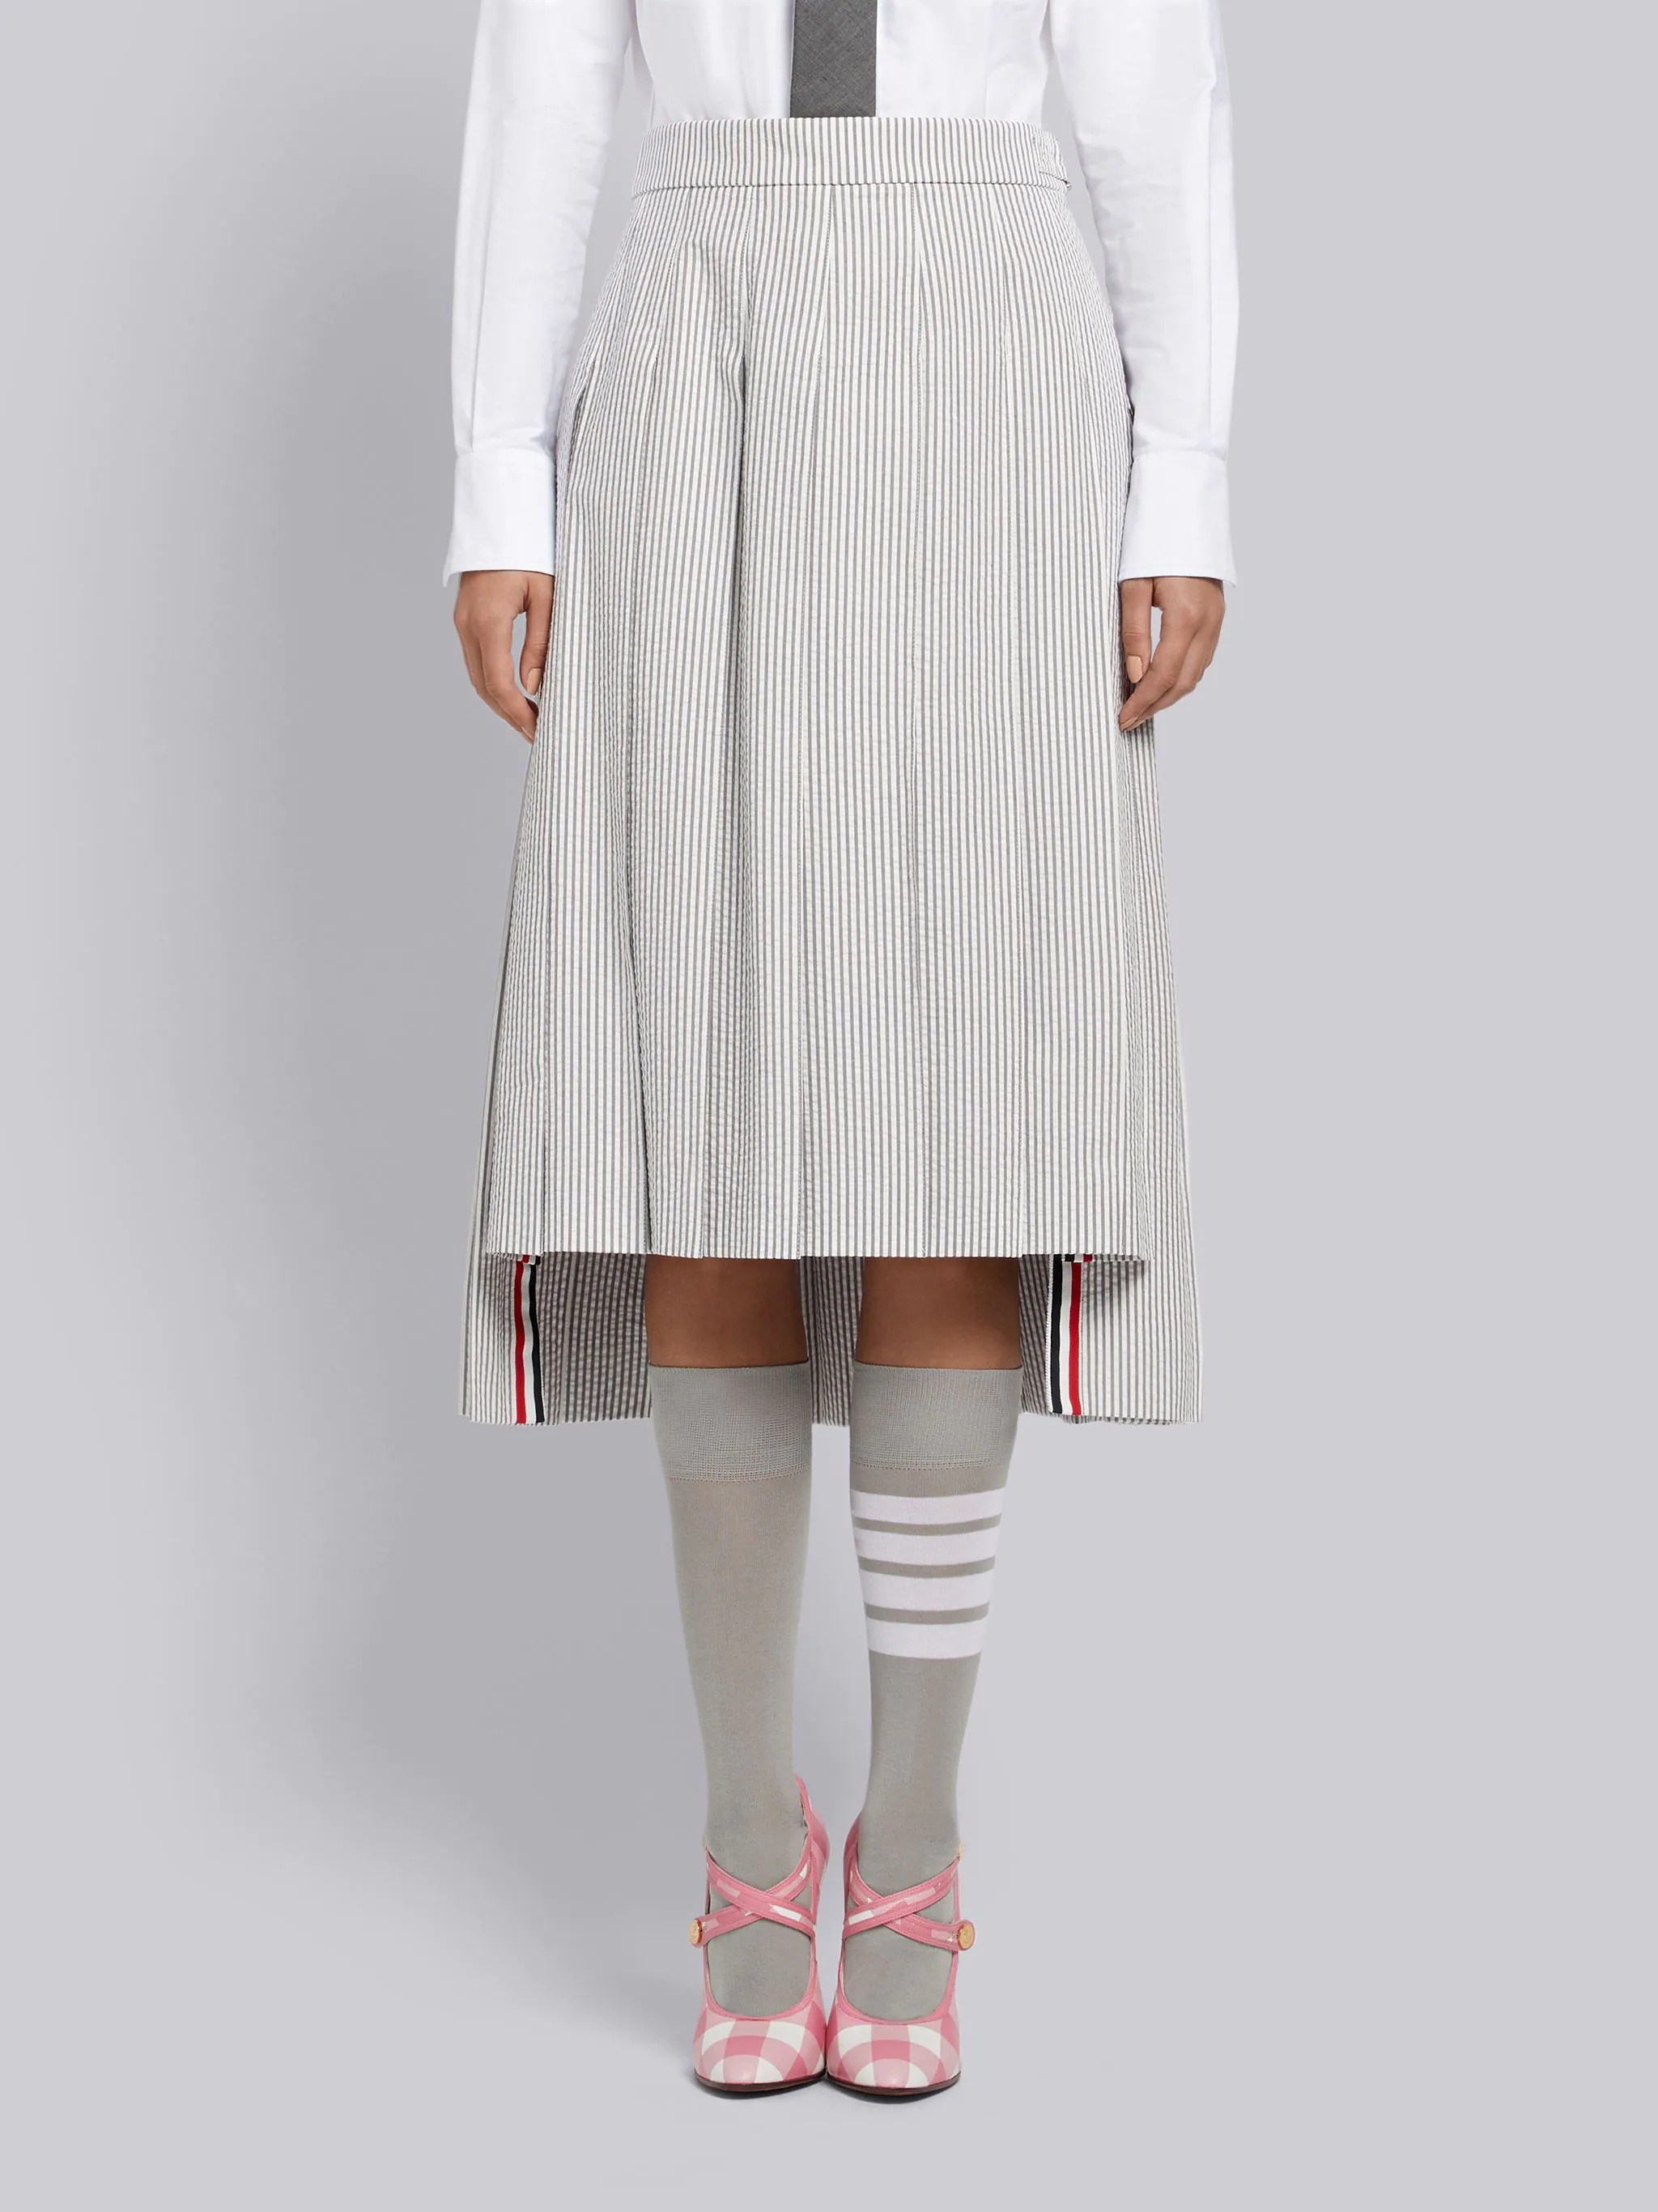 Medium Grey Seersucker Below-the-knee Pleated Skirt - 1